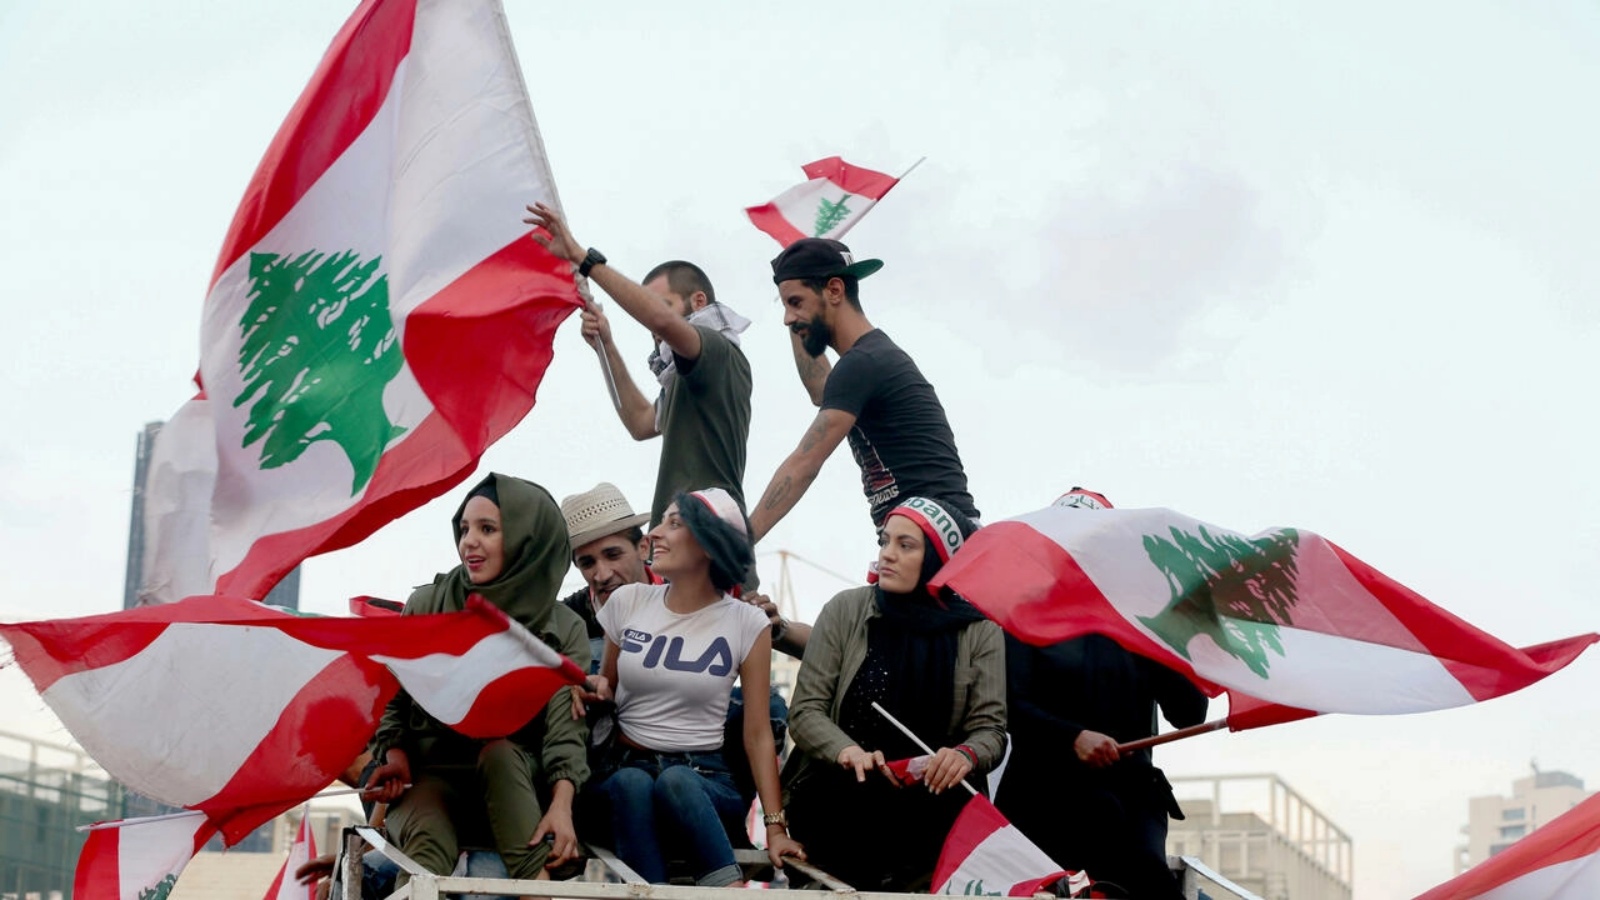 متظاهرون لبنانيون شباب في 20 أكتوبر 2019 في بيروت خلال الحركة الاحتجاجية ضد الطبقة السياسية